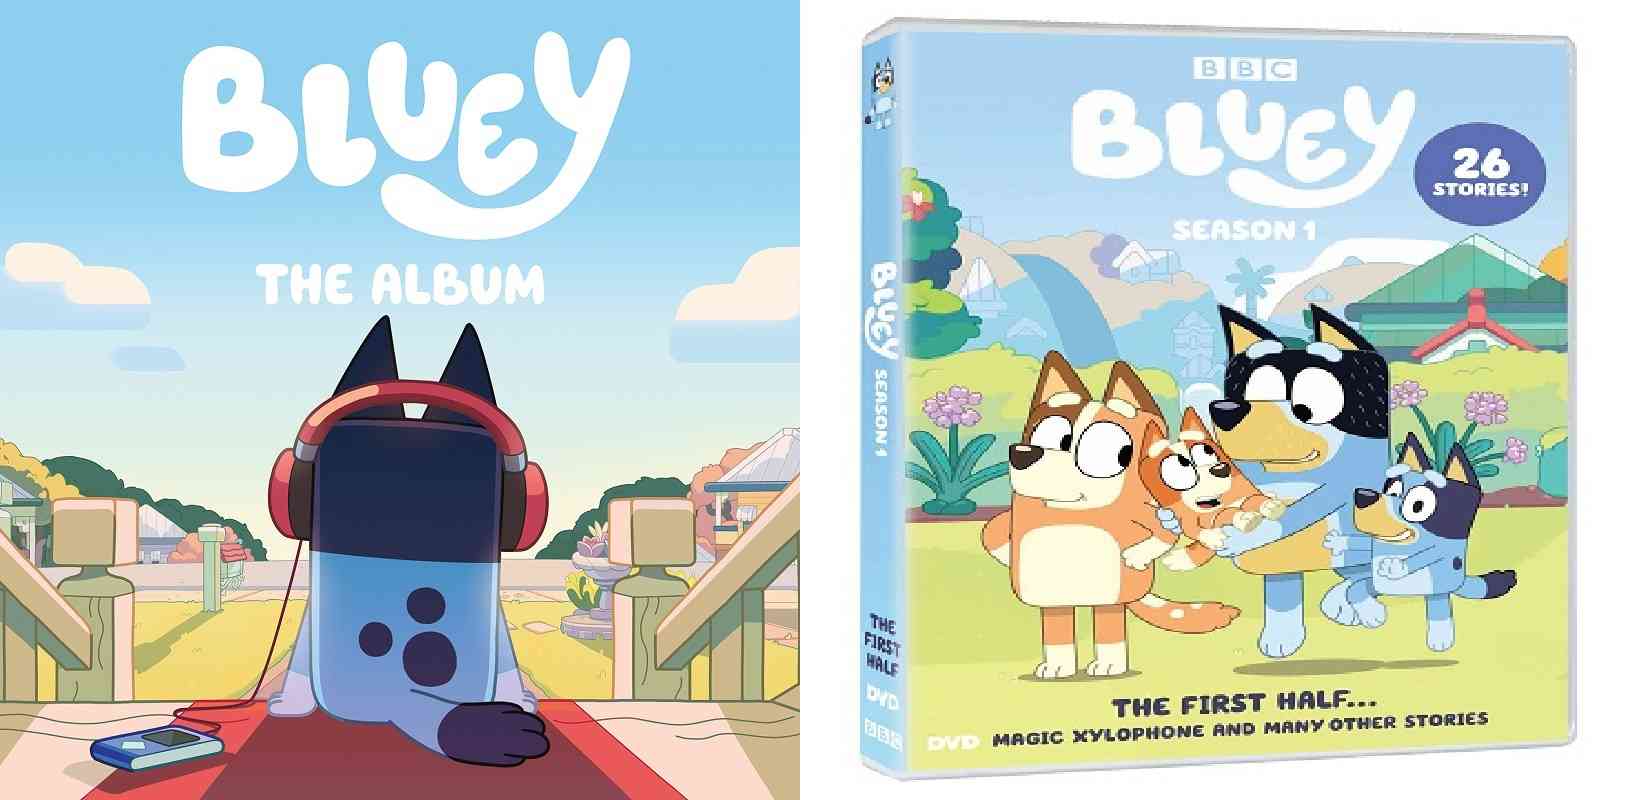 Kartun prasekolah Bluey telah merilis album Soundtrack dan DVD yang Sudah di jual di Amerika.